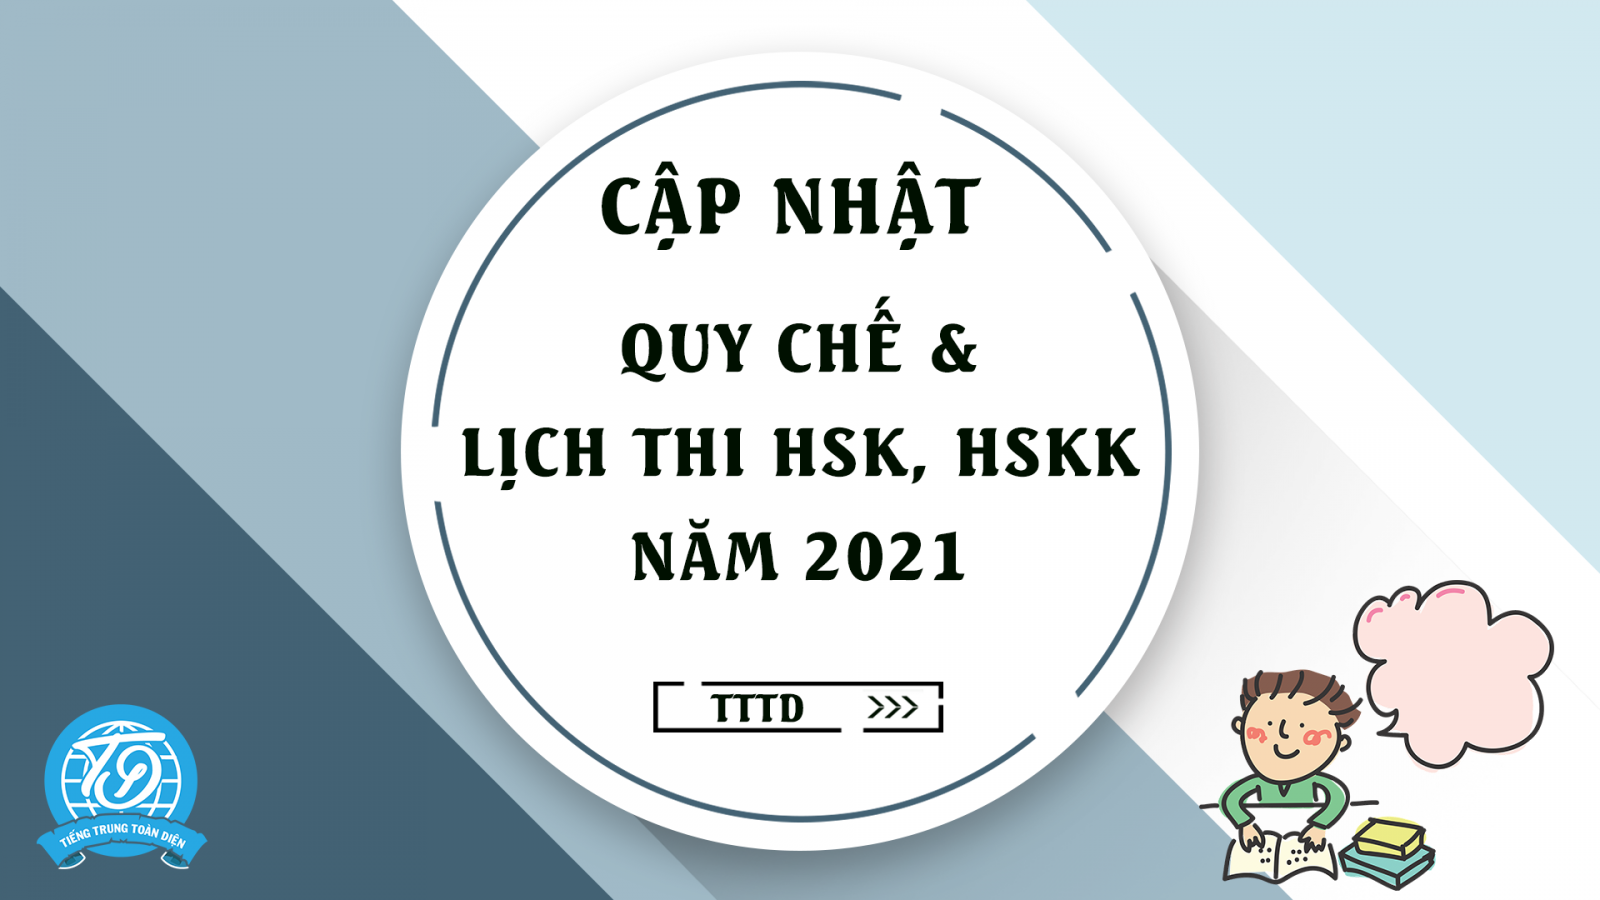 Cập nhật mới nhất: Quy chế thi HSK năm 2021 và Lịch thi HSK, HSKK năm 2021 do HANBAN tổ chức